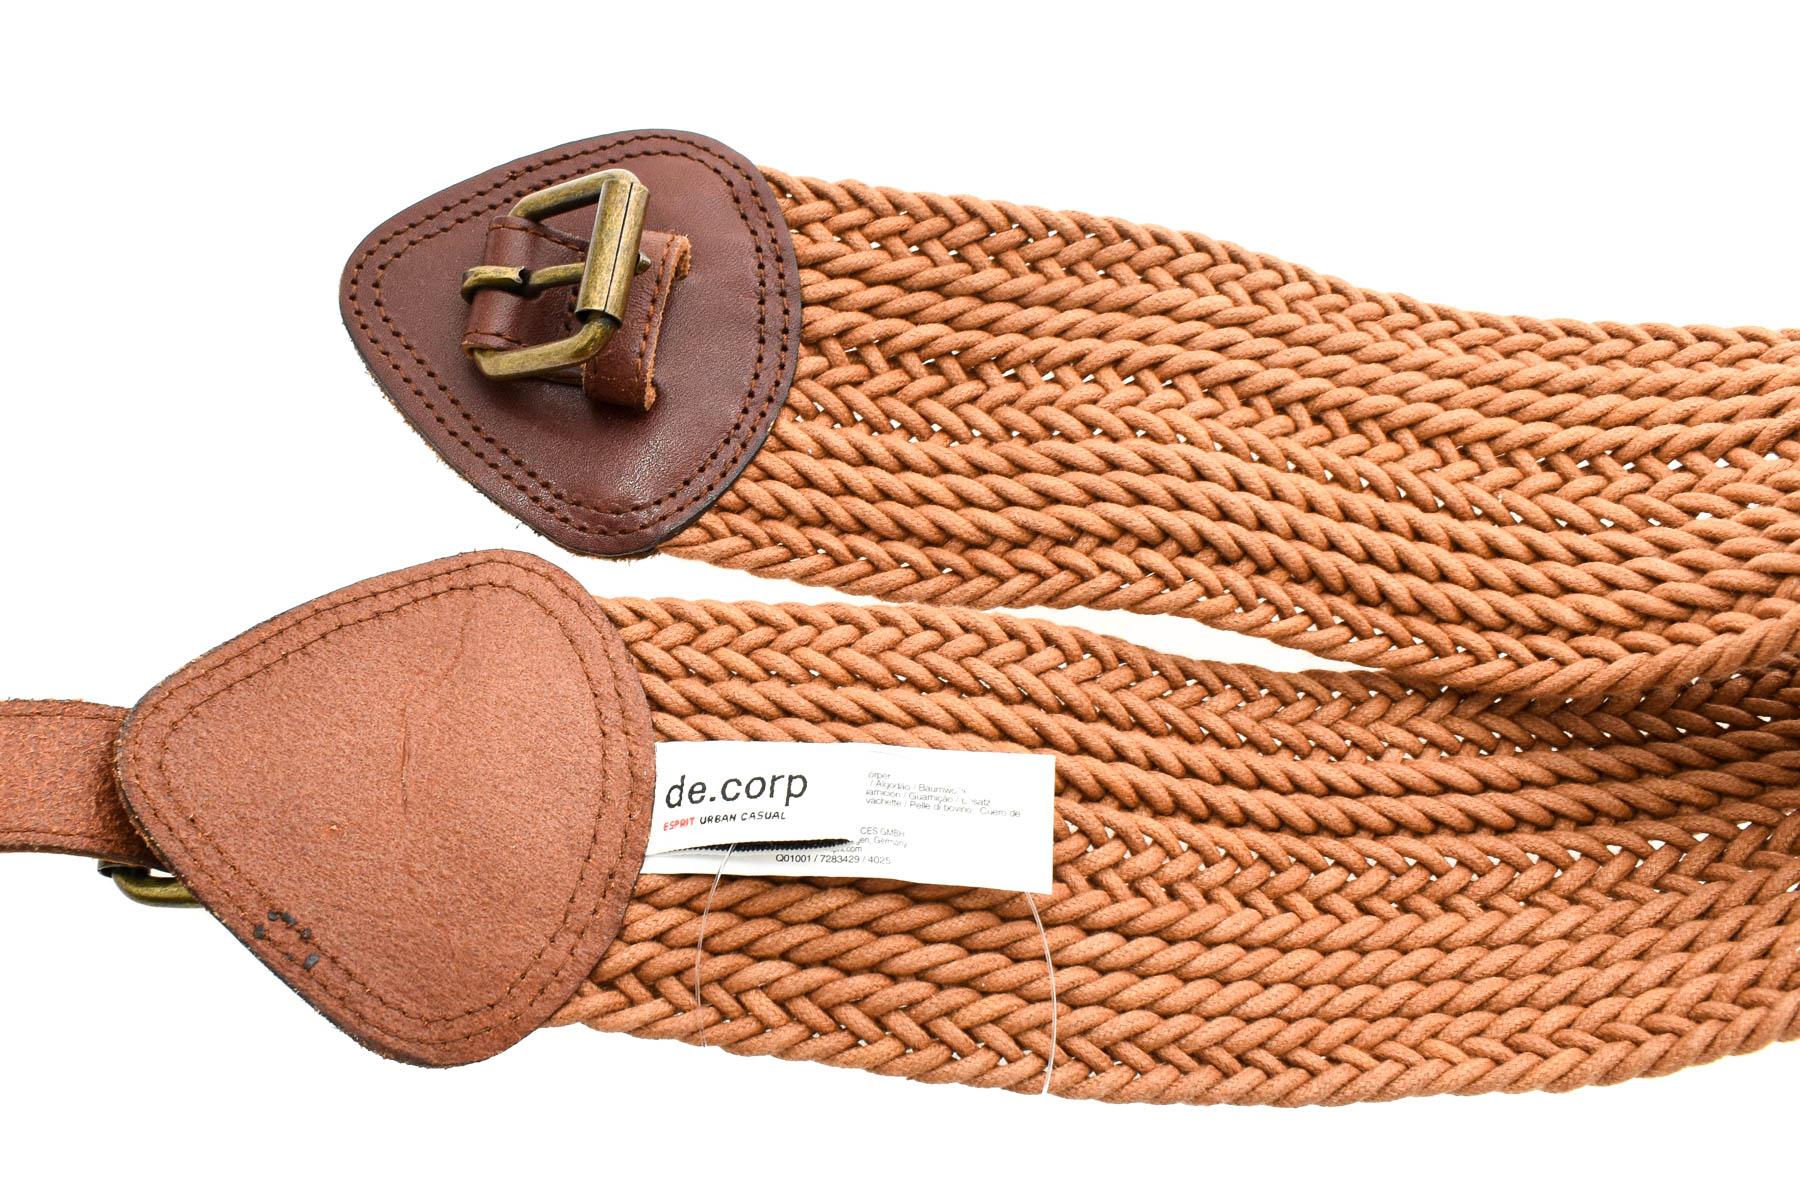 Ladies's belt - De.corp - 2